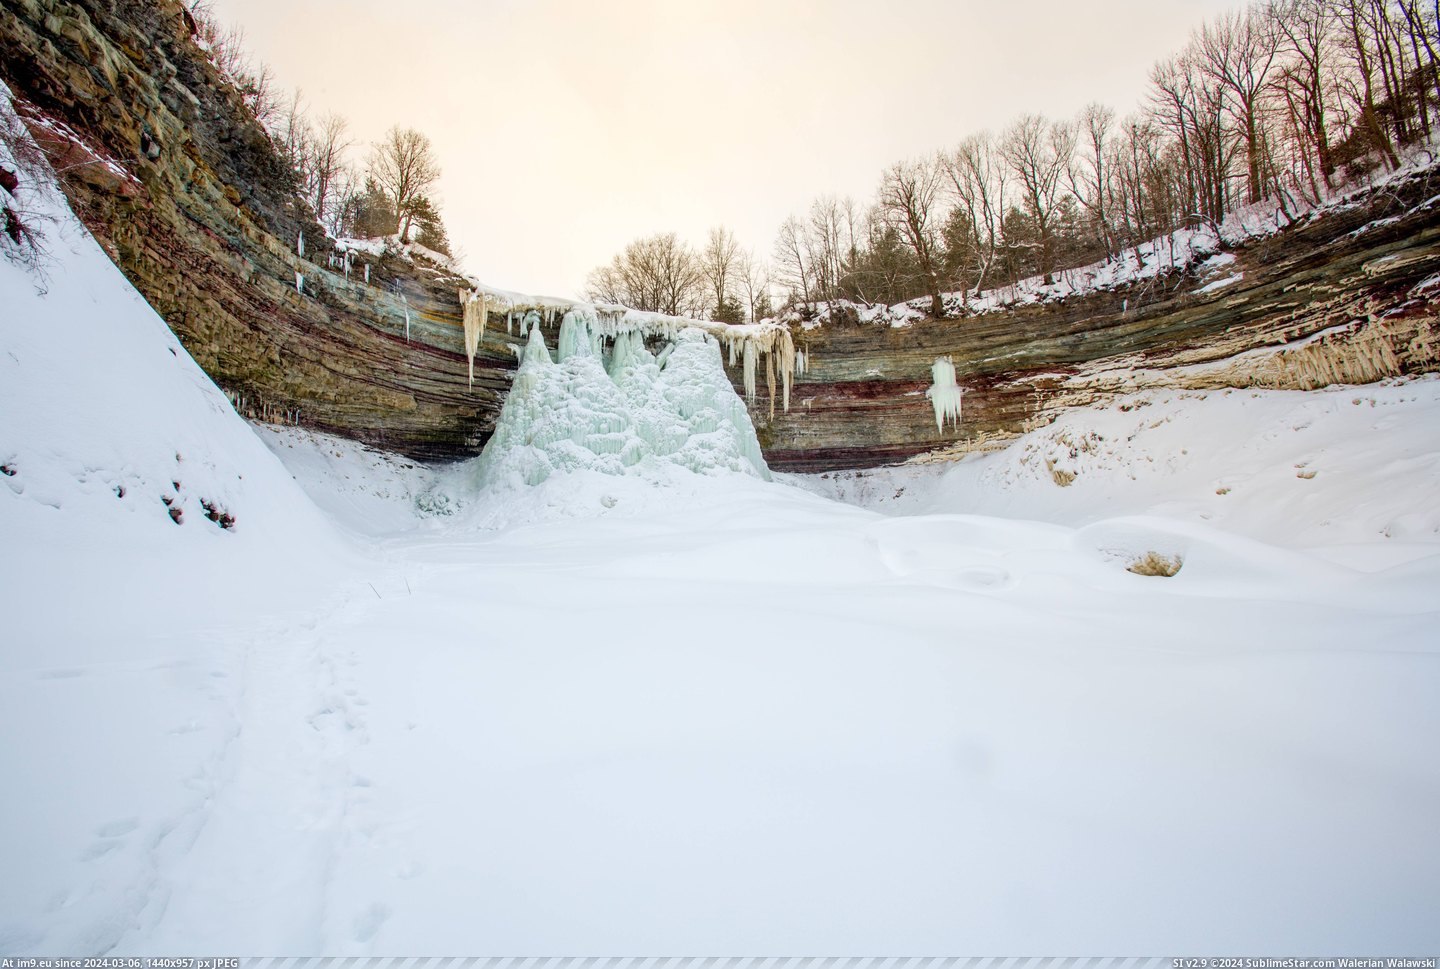 #Falls #Ontario #Southern #Frozen #Balls [Earthporn] Frozen Balls Falls, Southern Ontario  [5459x3639] Pic. (Obraz z album My r/EARTHPORN favs))